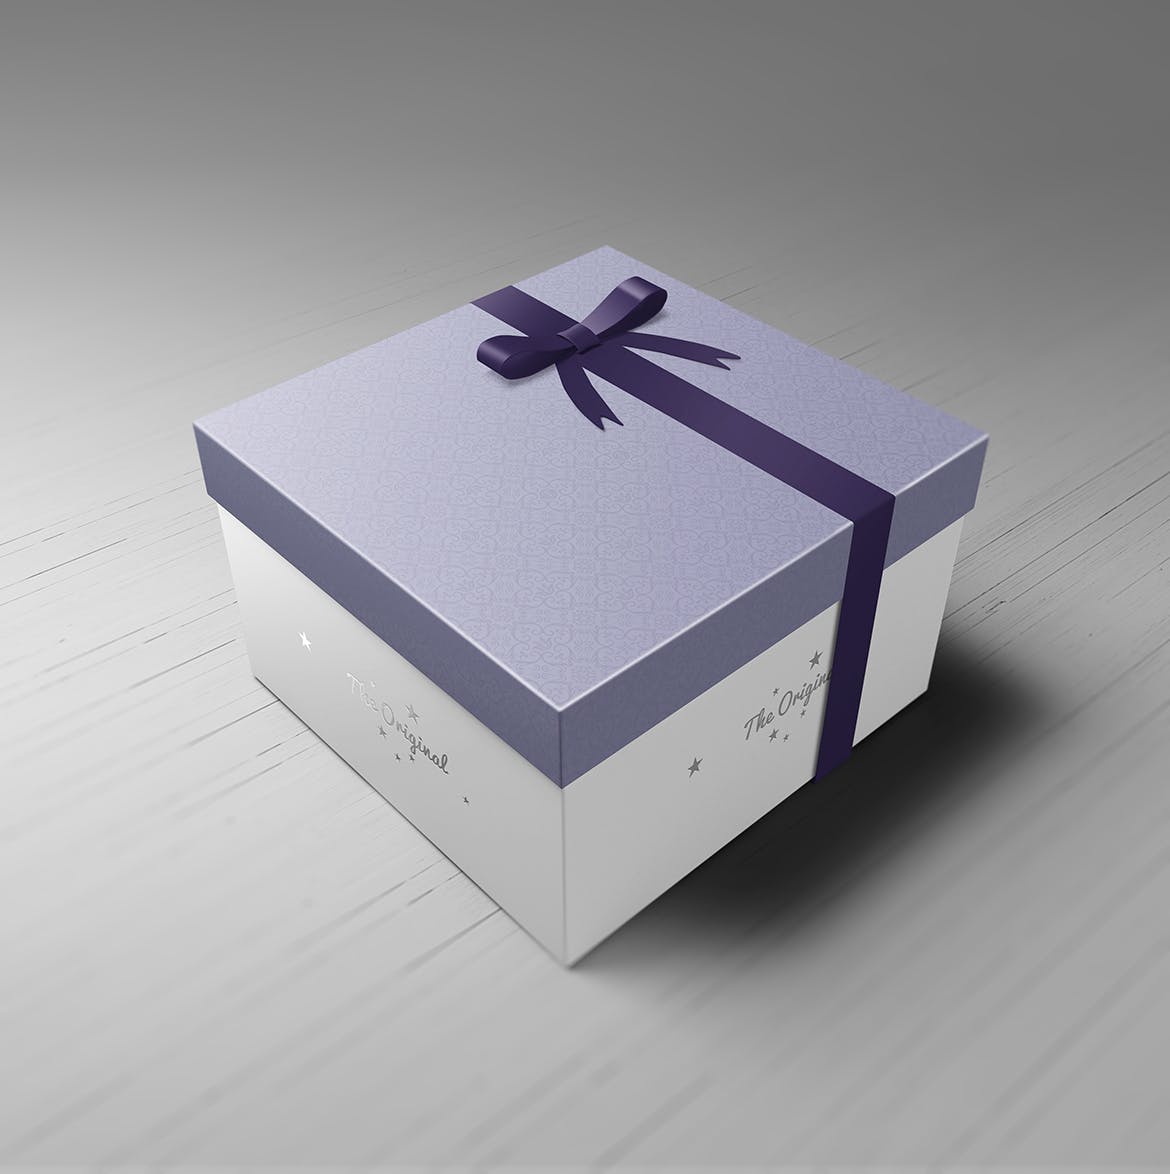 各种包装盒礼品盒展示模型设计素材 branded-prod